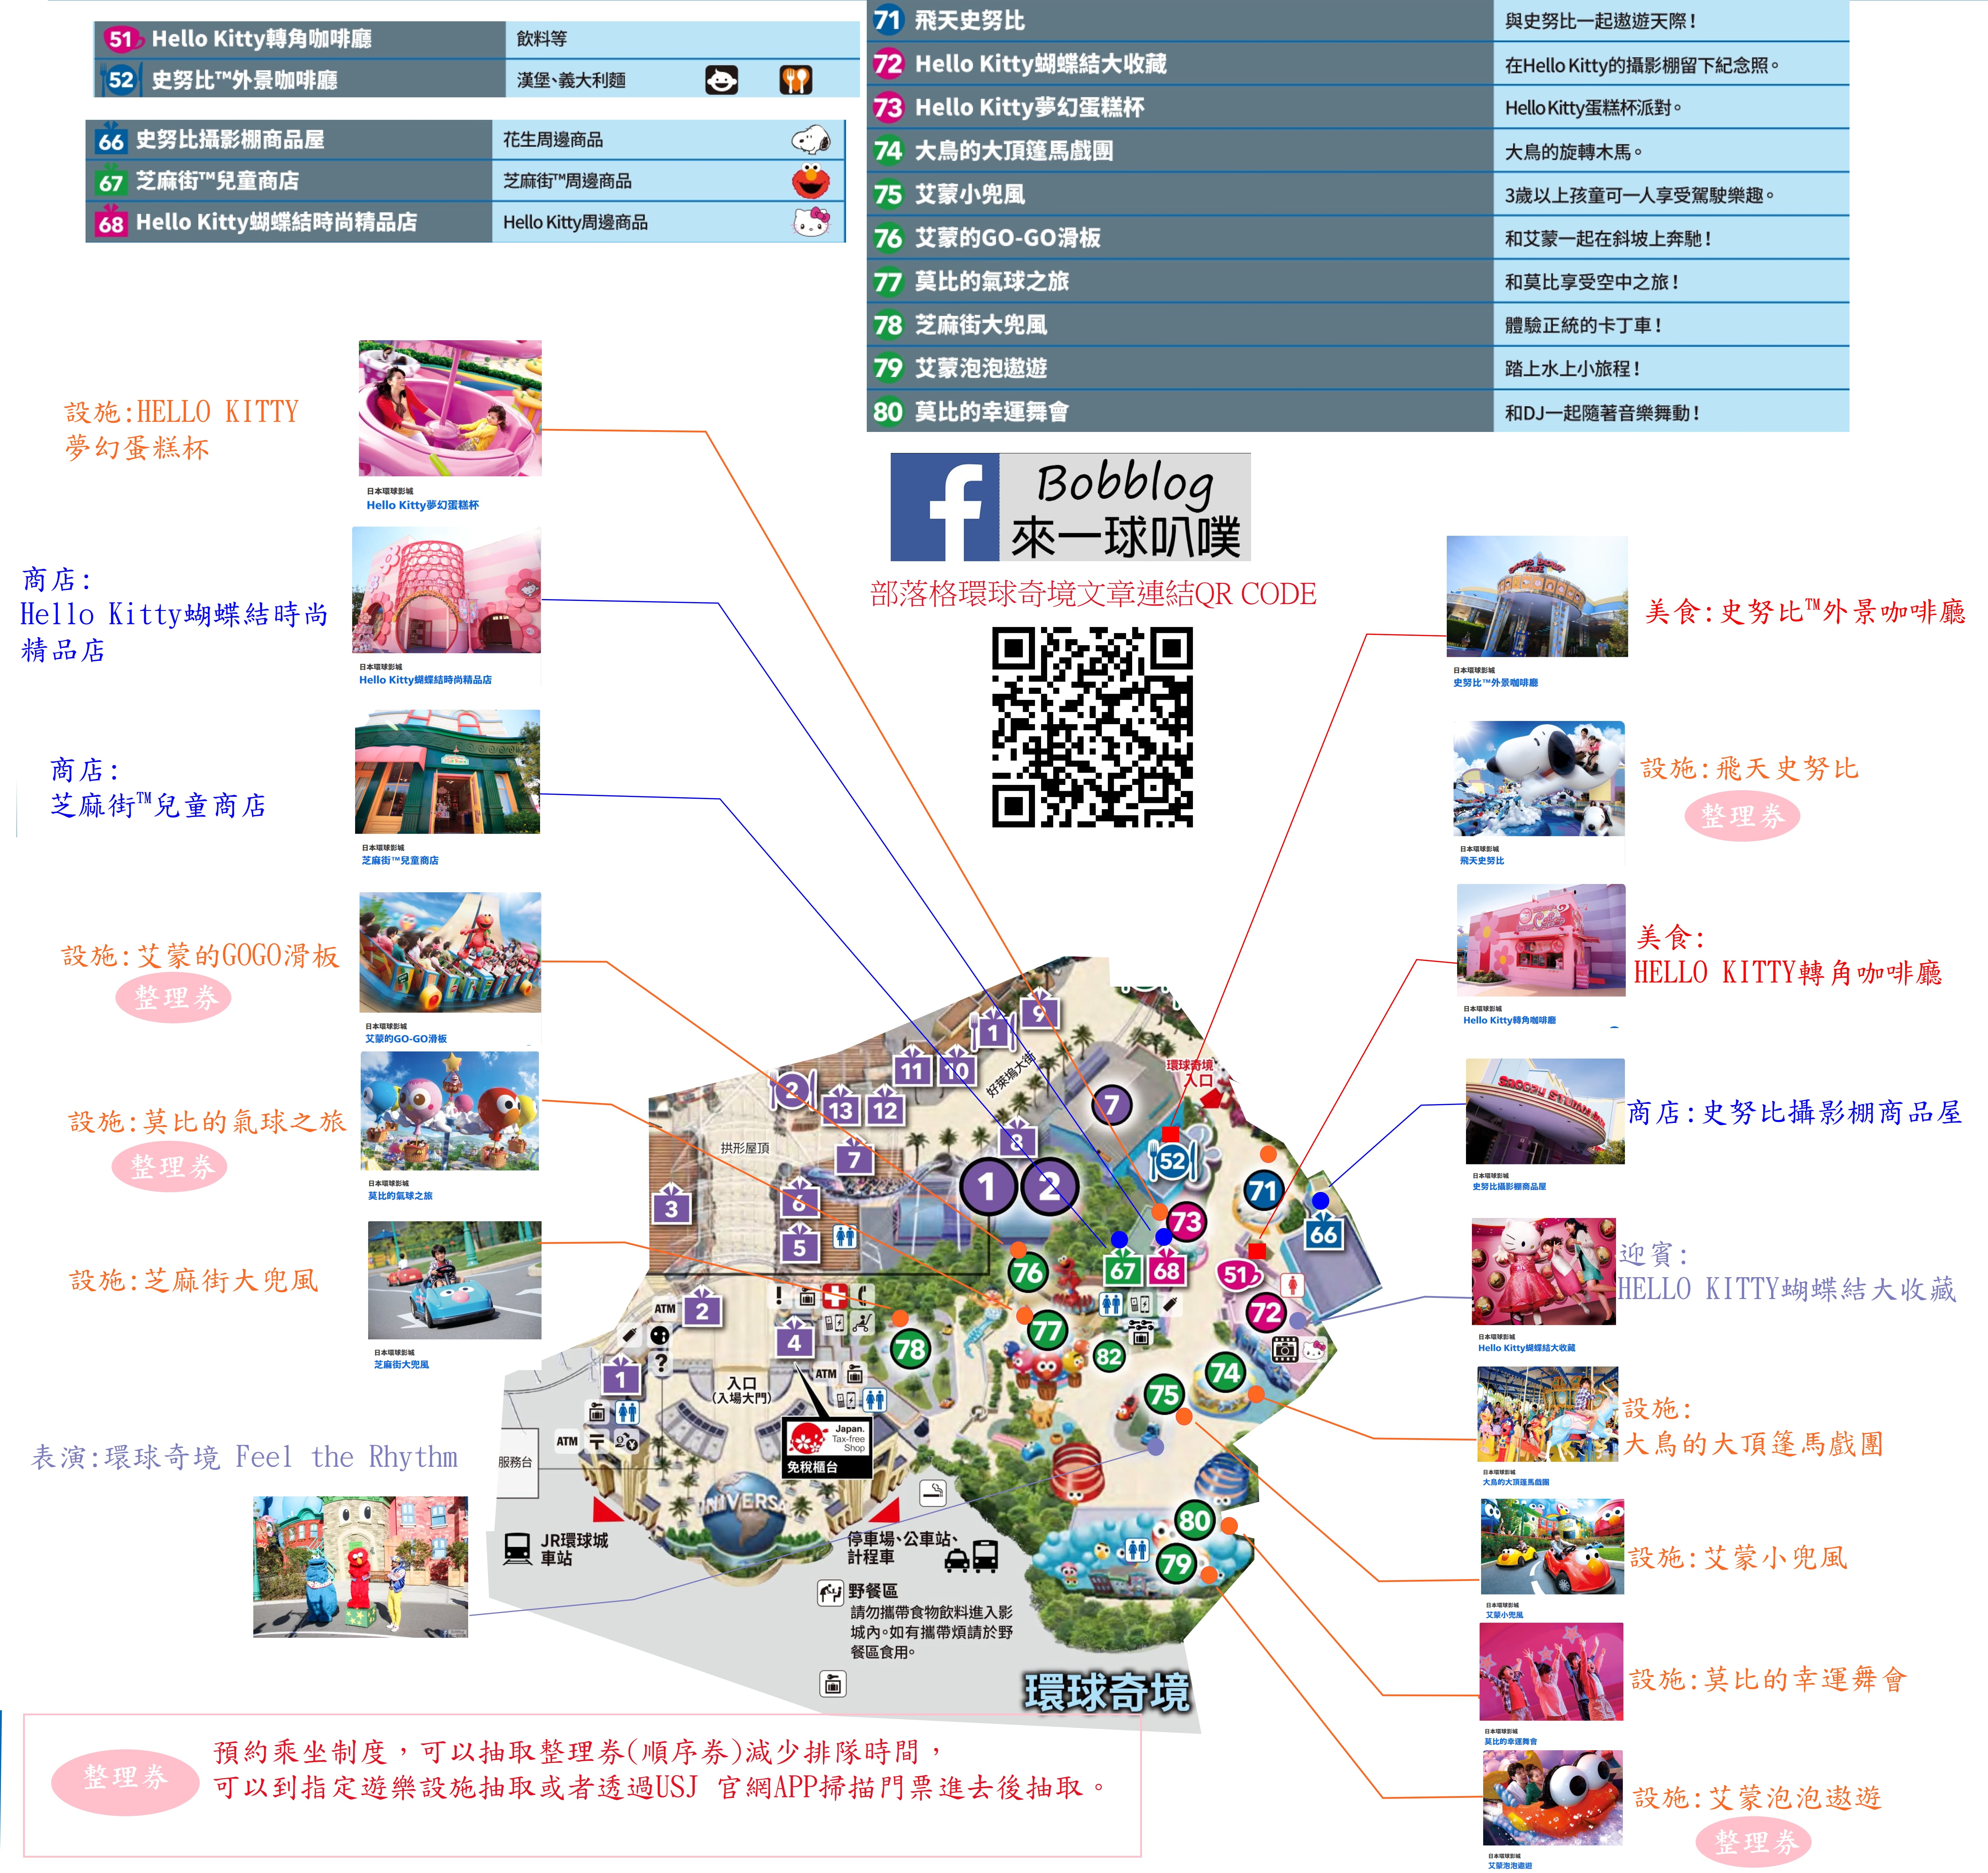 日本大阪環球影城地圖下載整理(哈利波特、瑪利歐、小小兵樂園)